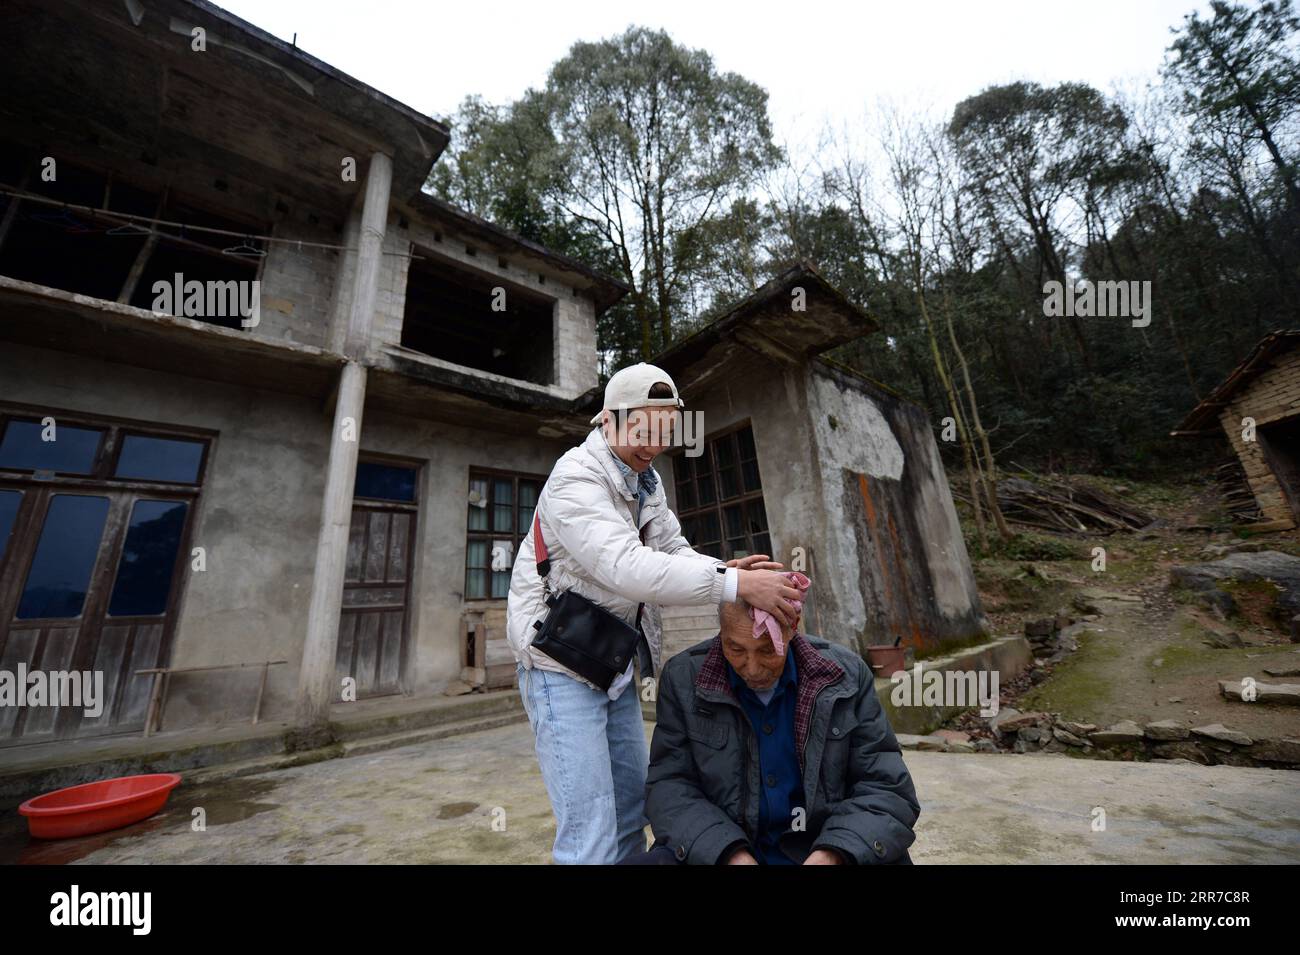 210325 -- ZHANGJIAJIE, 25. März 2021 -- Zhuo Yihang bereitet sich darauf vor, einem älteren Menschen im Dorf Liangshan im Cili County, Provinz Hunan, am 3. März 2021 einen Haarschnitt zu geben. Zhuo Yihang, 33, wurde im Cili County in der Provinz Hunan geboren. Derzeit betreibt er einen Friseurladen in Cili. Eines Tages im Mai 2020 sah Zhuo Yihang zwei alte Menschen, die sich am Straßenrand die Haare schnitten, sogar einer von ihnen blind, und so trat er voran und half. Er teilte diese Erfahrungen in den sozialen Medien und erhielt viele ermutigende Botschaften, weshalb er beschloss, älteren Menschen kostenlose Haarschnitte zu geben. Er ging zu Cili und anderen Re Stockfoto